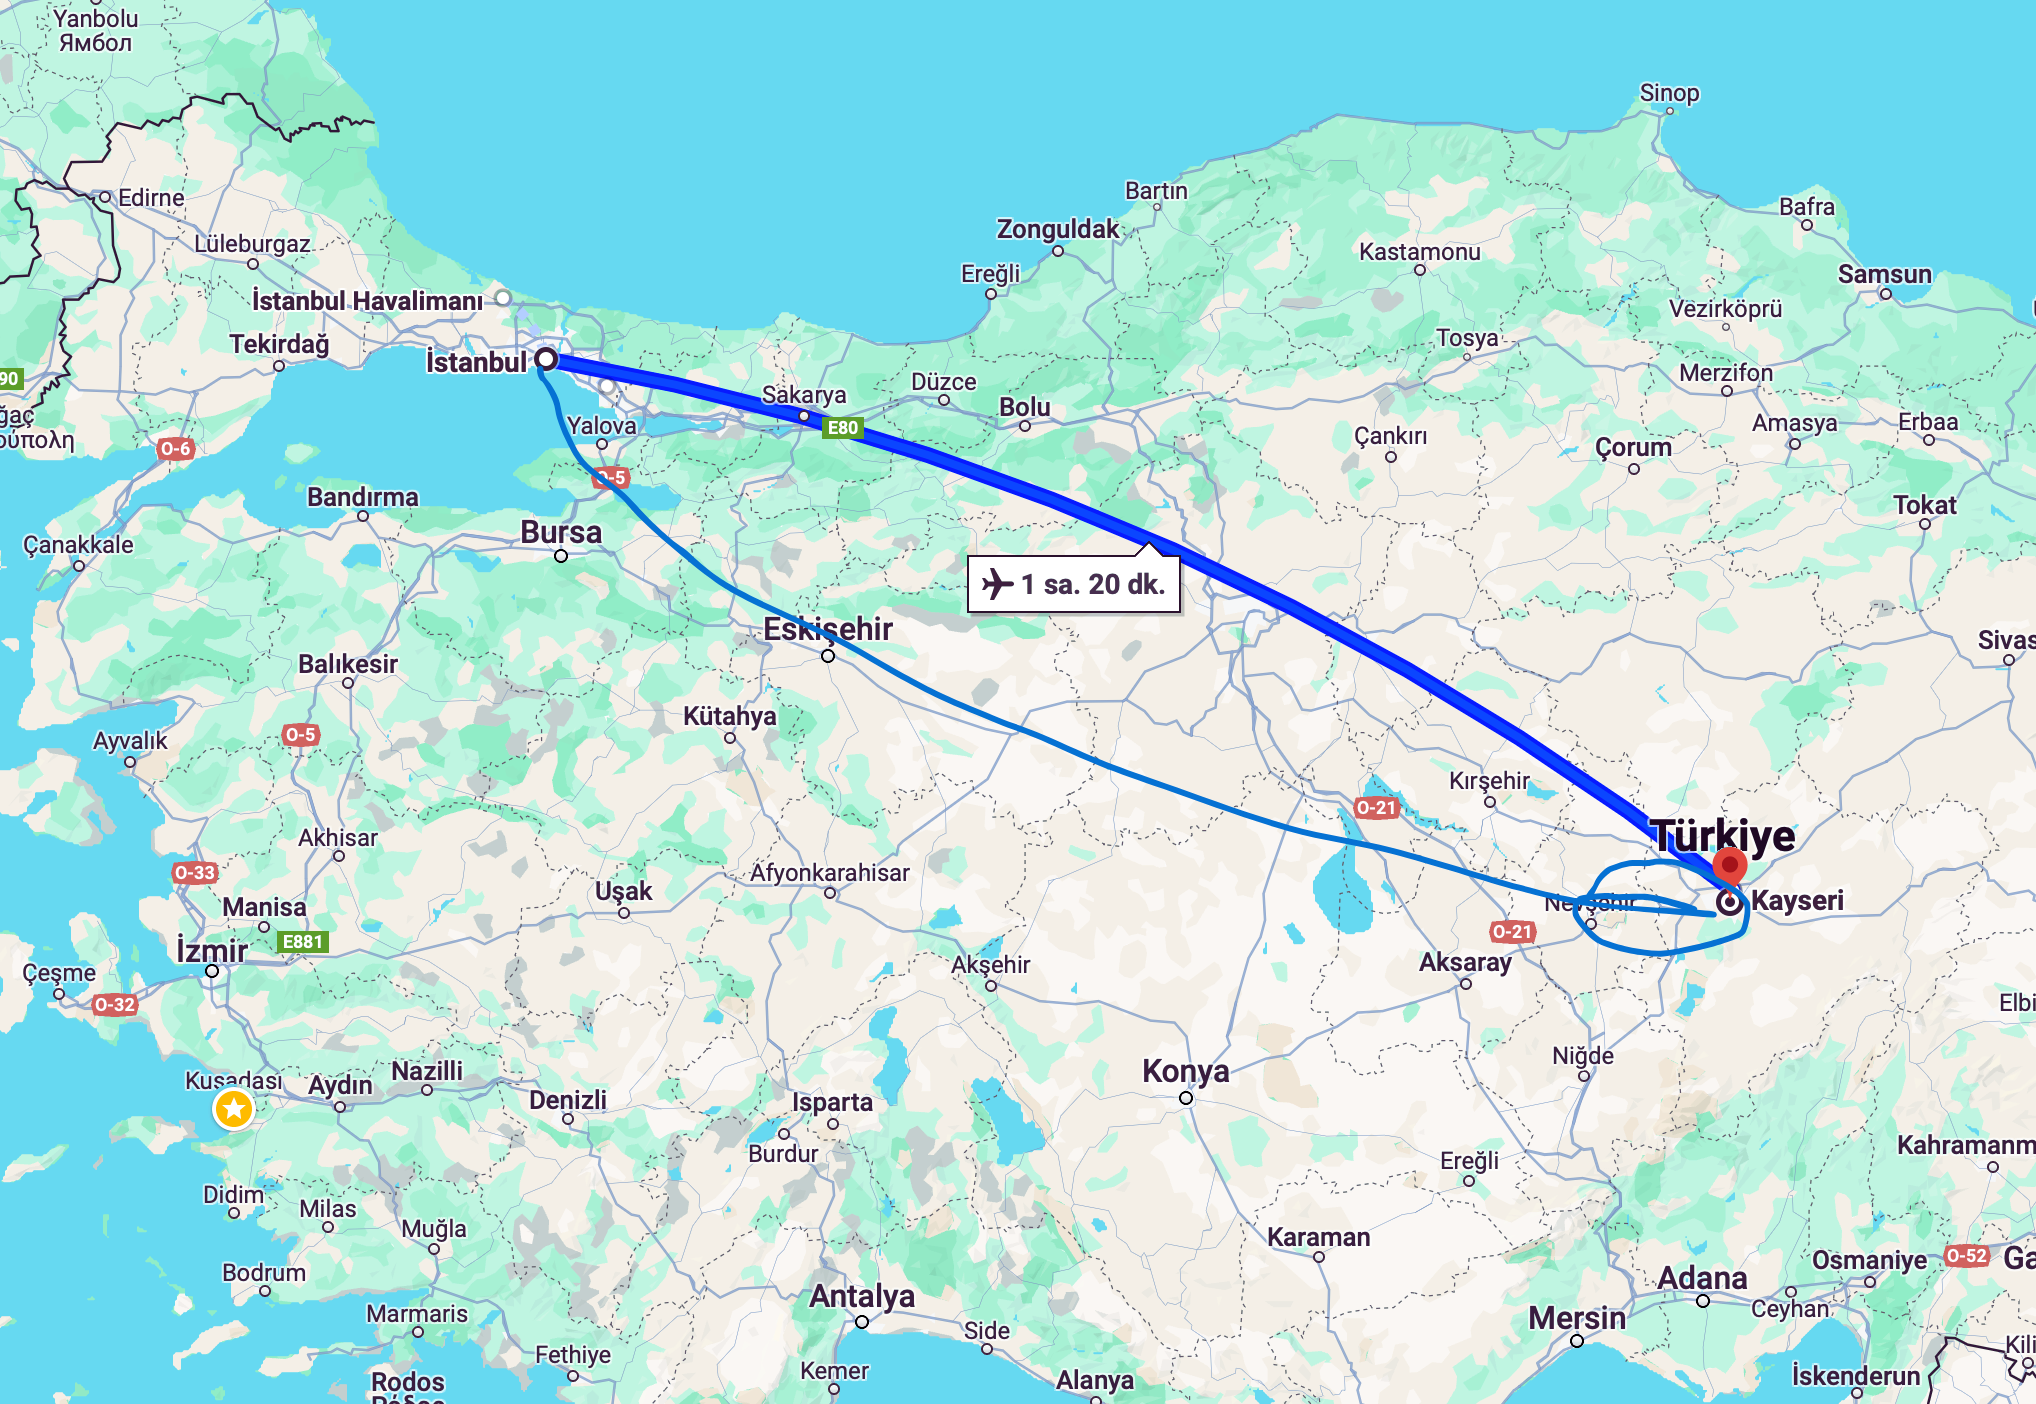 tourhub | Turkey Tour Company | 3 Days Cappadocia Tour From Istanbul | Tour Map